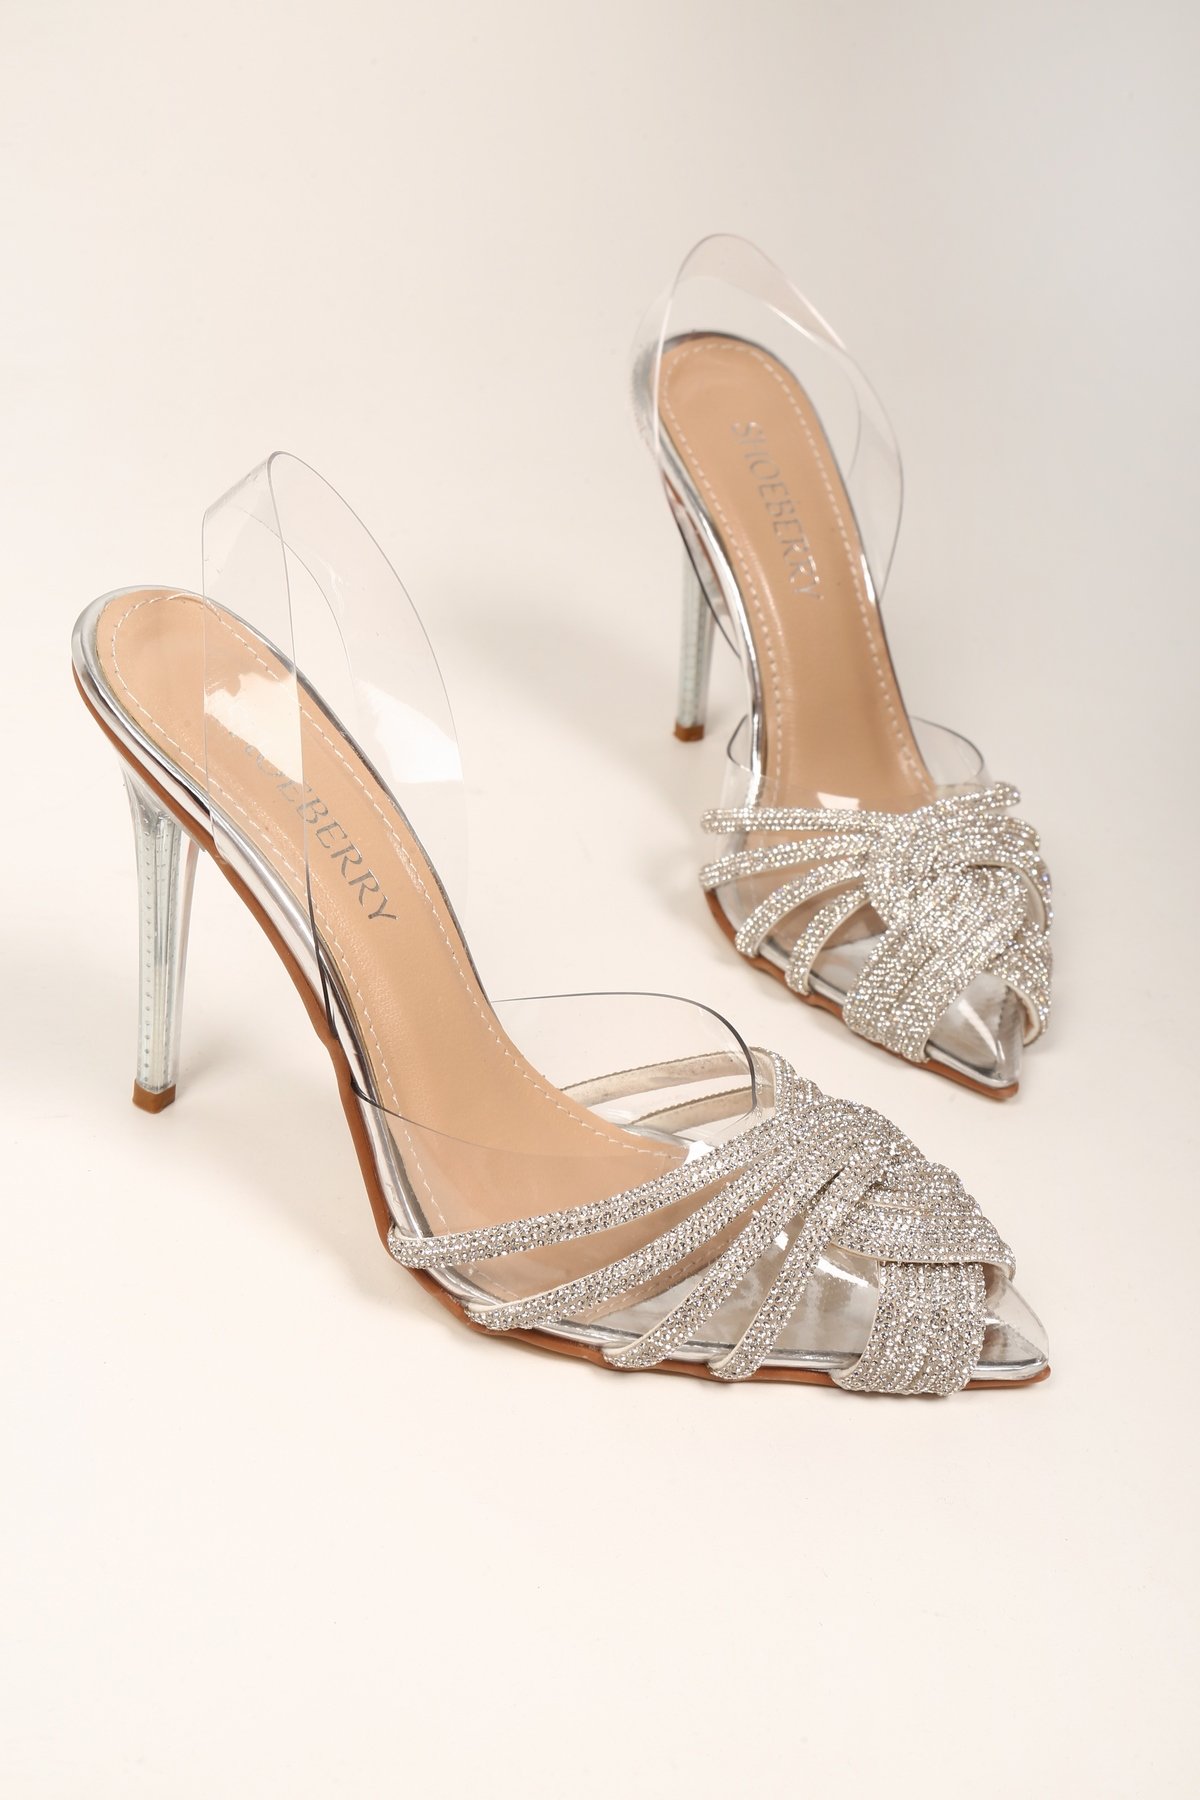 Kadın Queen Gümüş Şeffaf Taşlı Topuklu Ayakkabı Stiletto